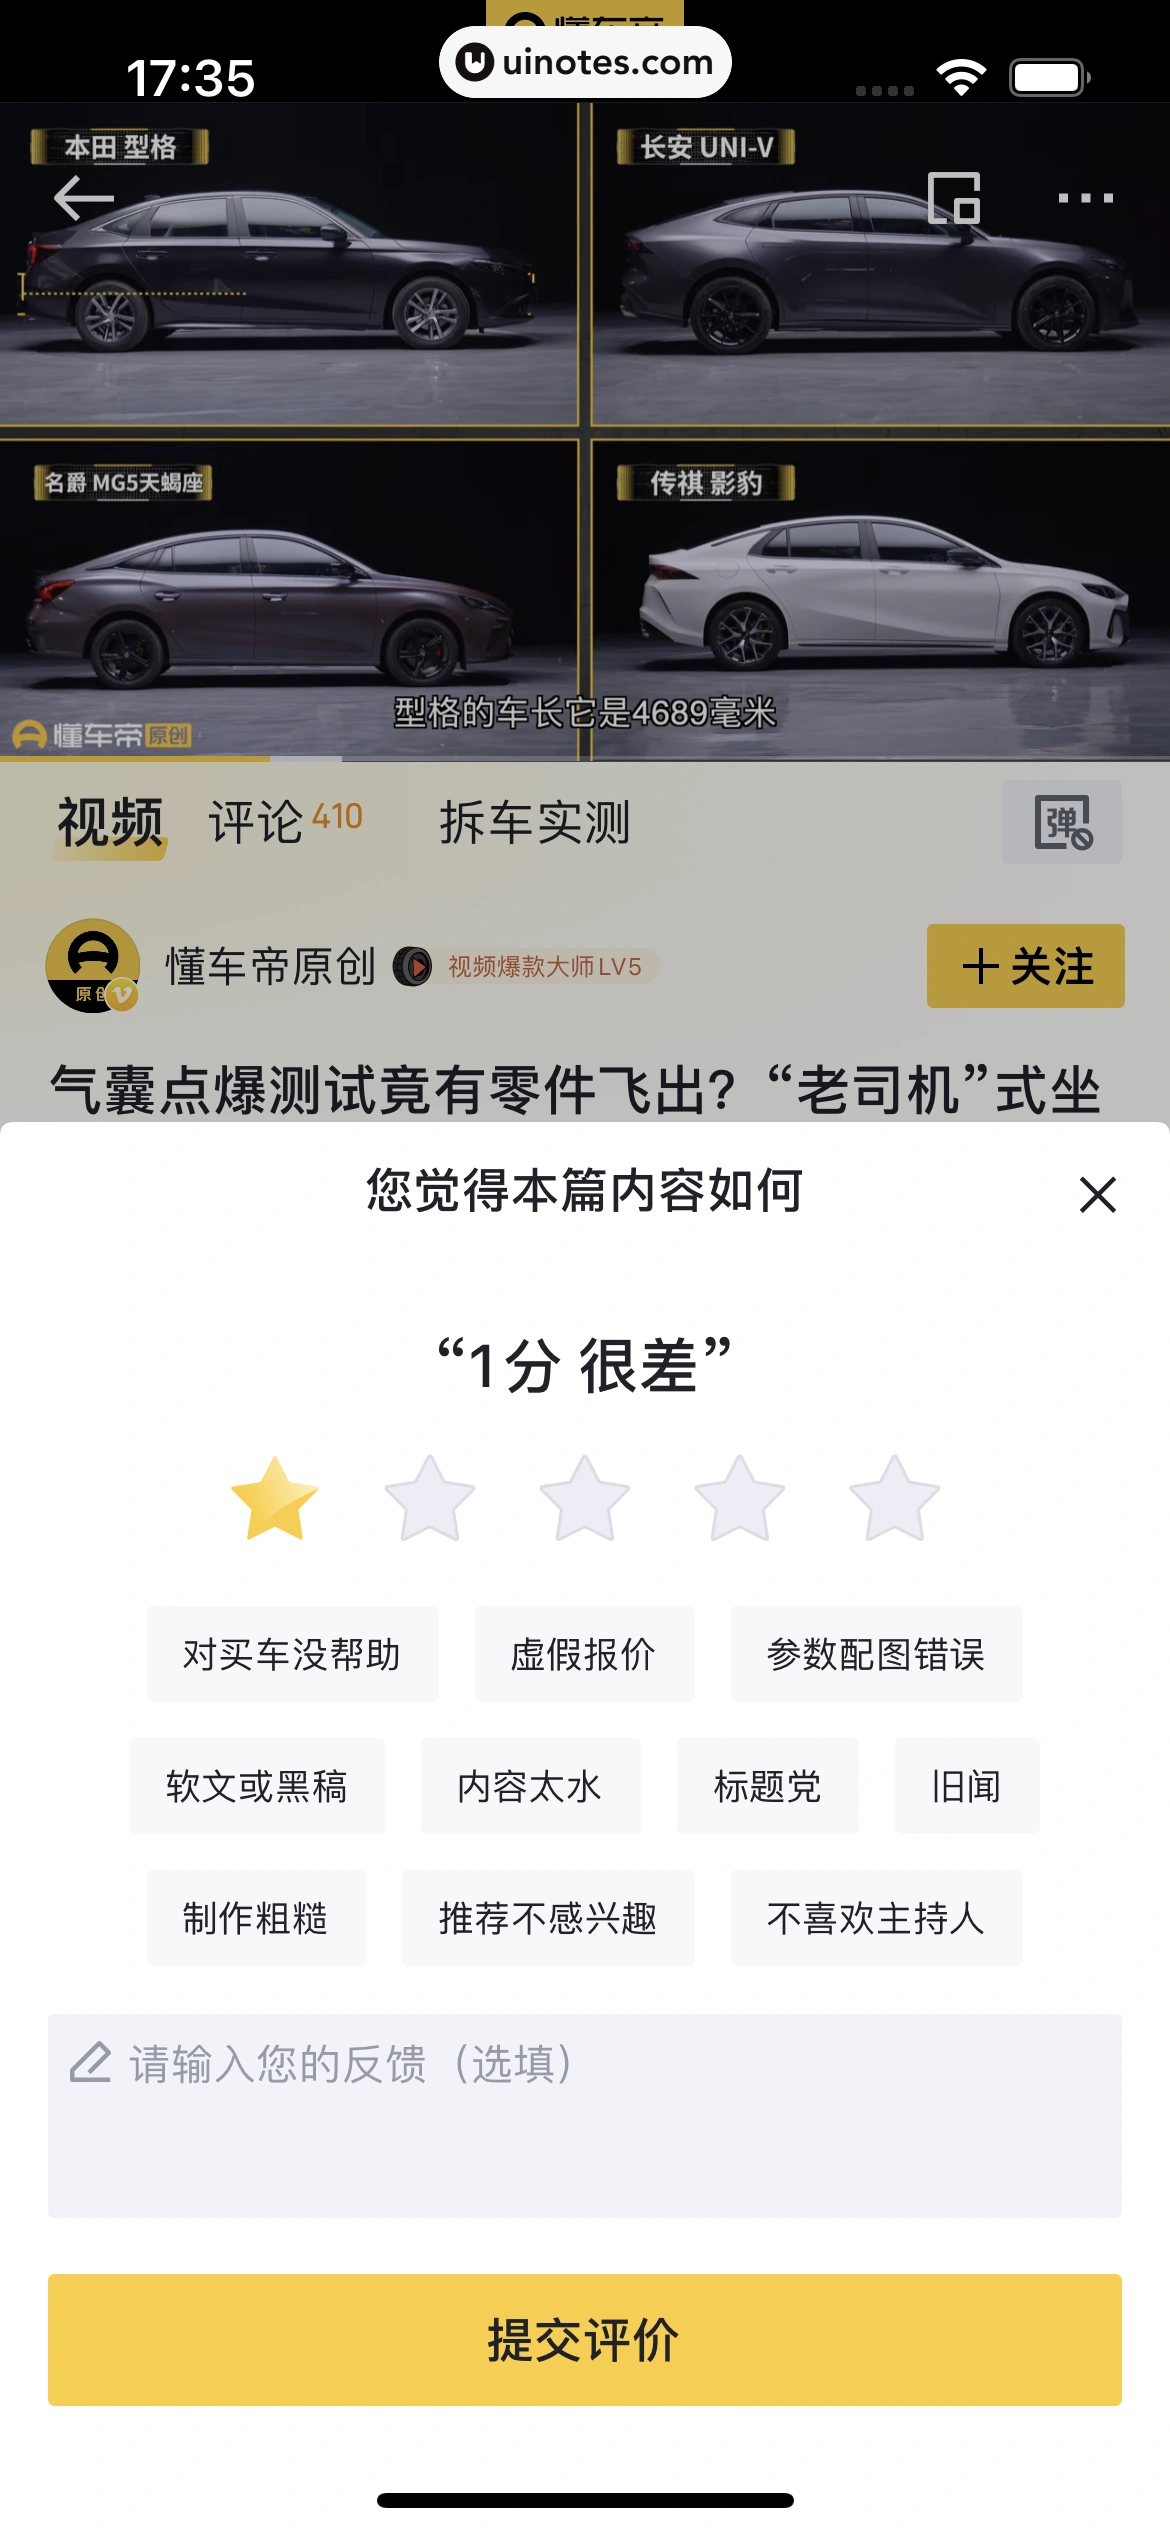 懂车帝 App 截图 045 - UI Notes